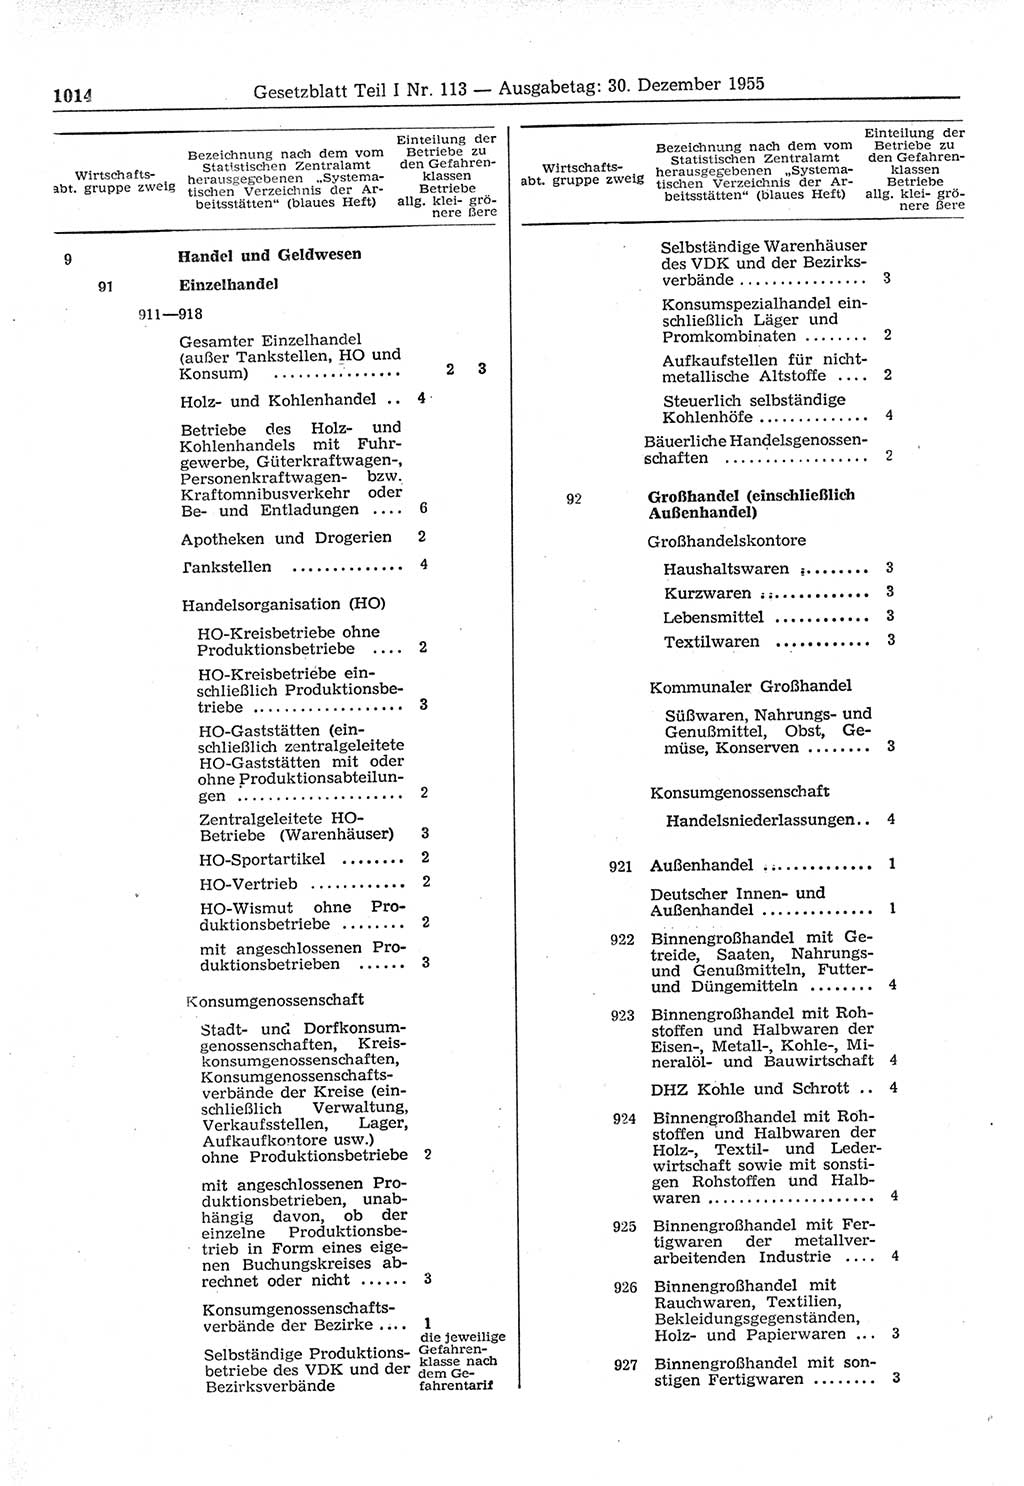 Gesetzblatt (GBl.) der Deutschen Demokratischen Republik (DDR) Teil Ⅰ 1955, Seite 1014 (GBl. DDR Ⅰ 1955, S. 1014)